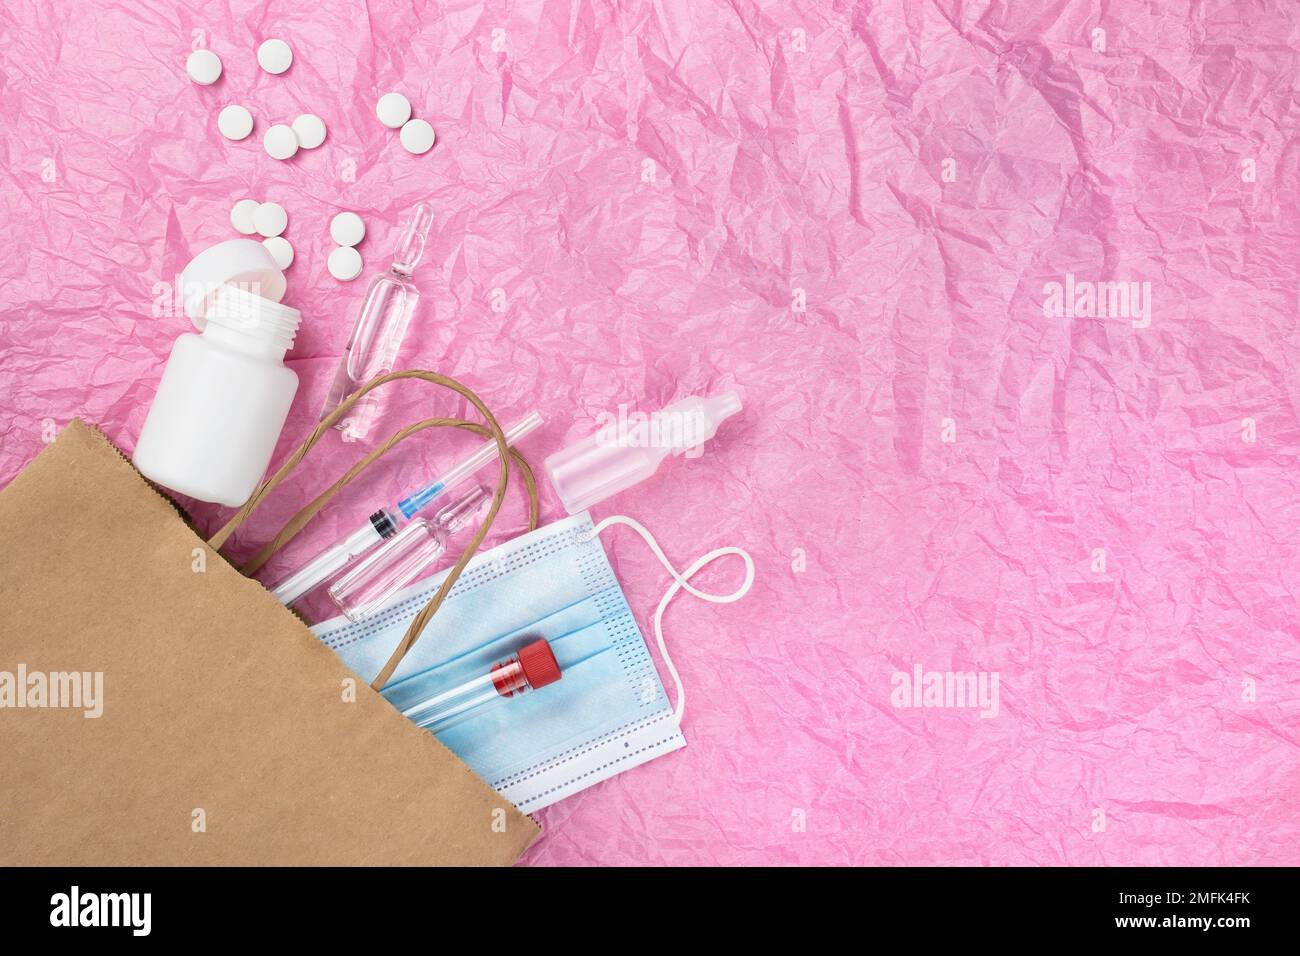 Articoli medici come pillole ampolle, una siringa e una maschera peek fuori da un sacchetto di carta contro uno sfondo di carta rosa stropicciata. Un sacco di spazio vuoto fo Foto Stock